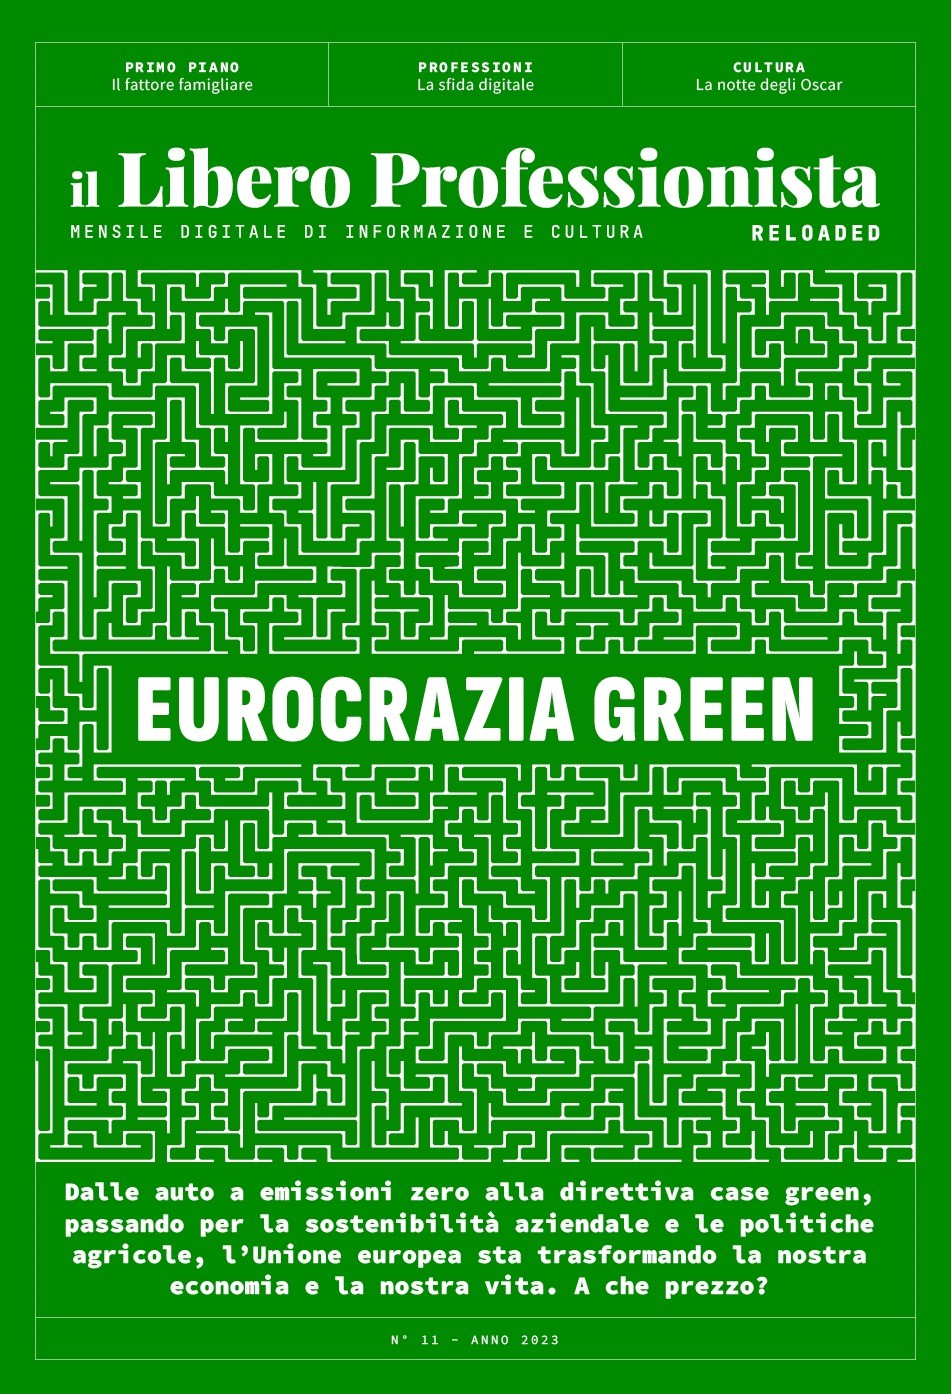 Il Libero Professionista reloaded #11: Eurocrazia green